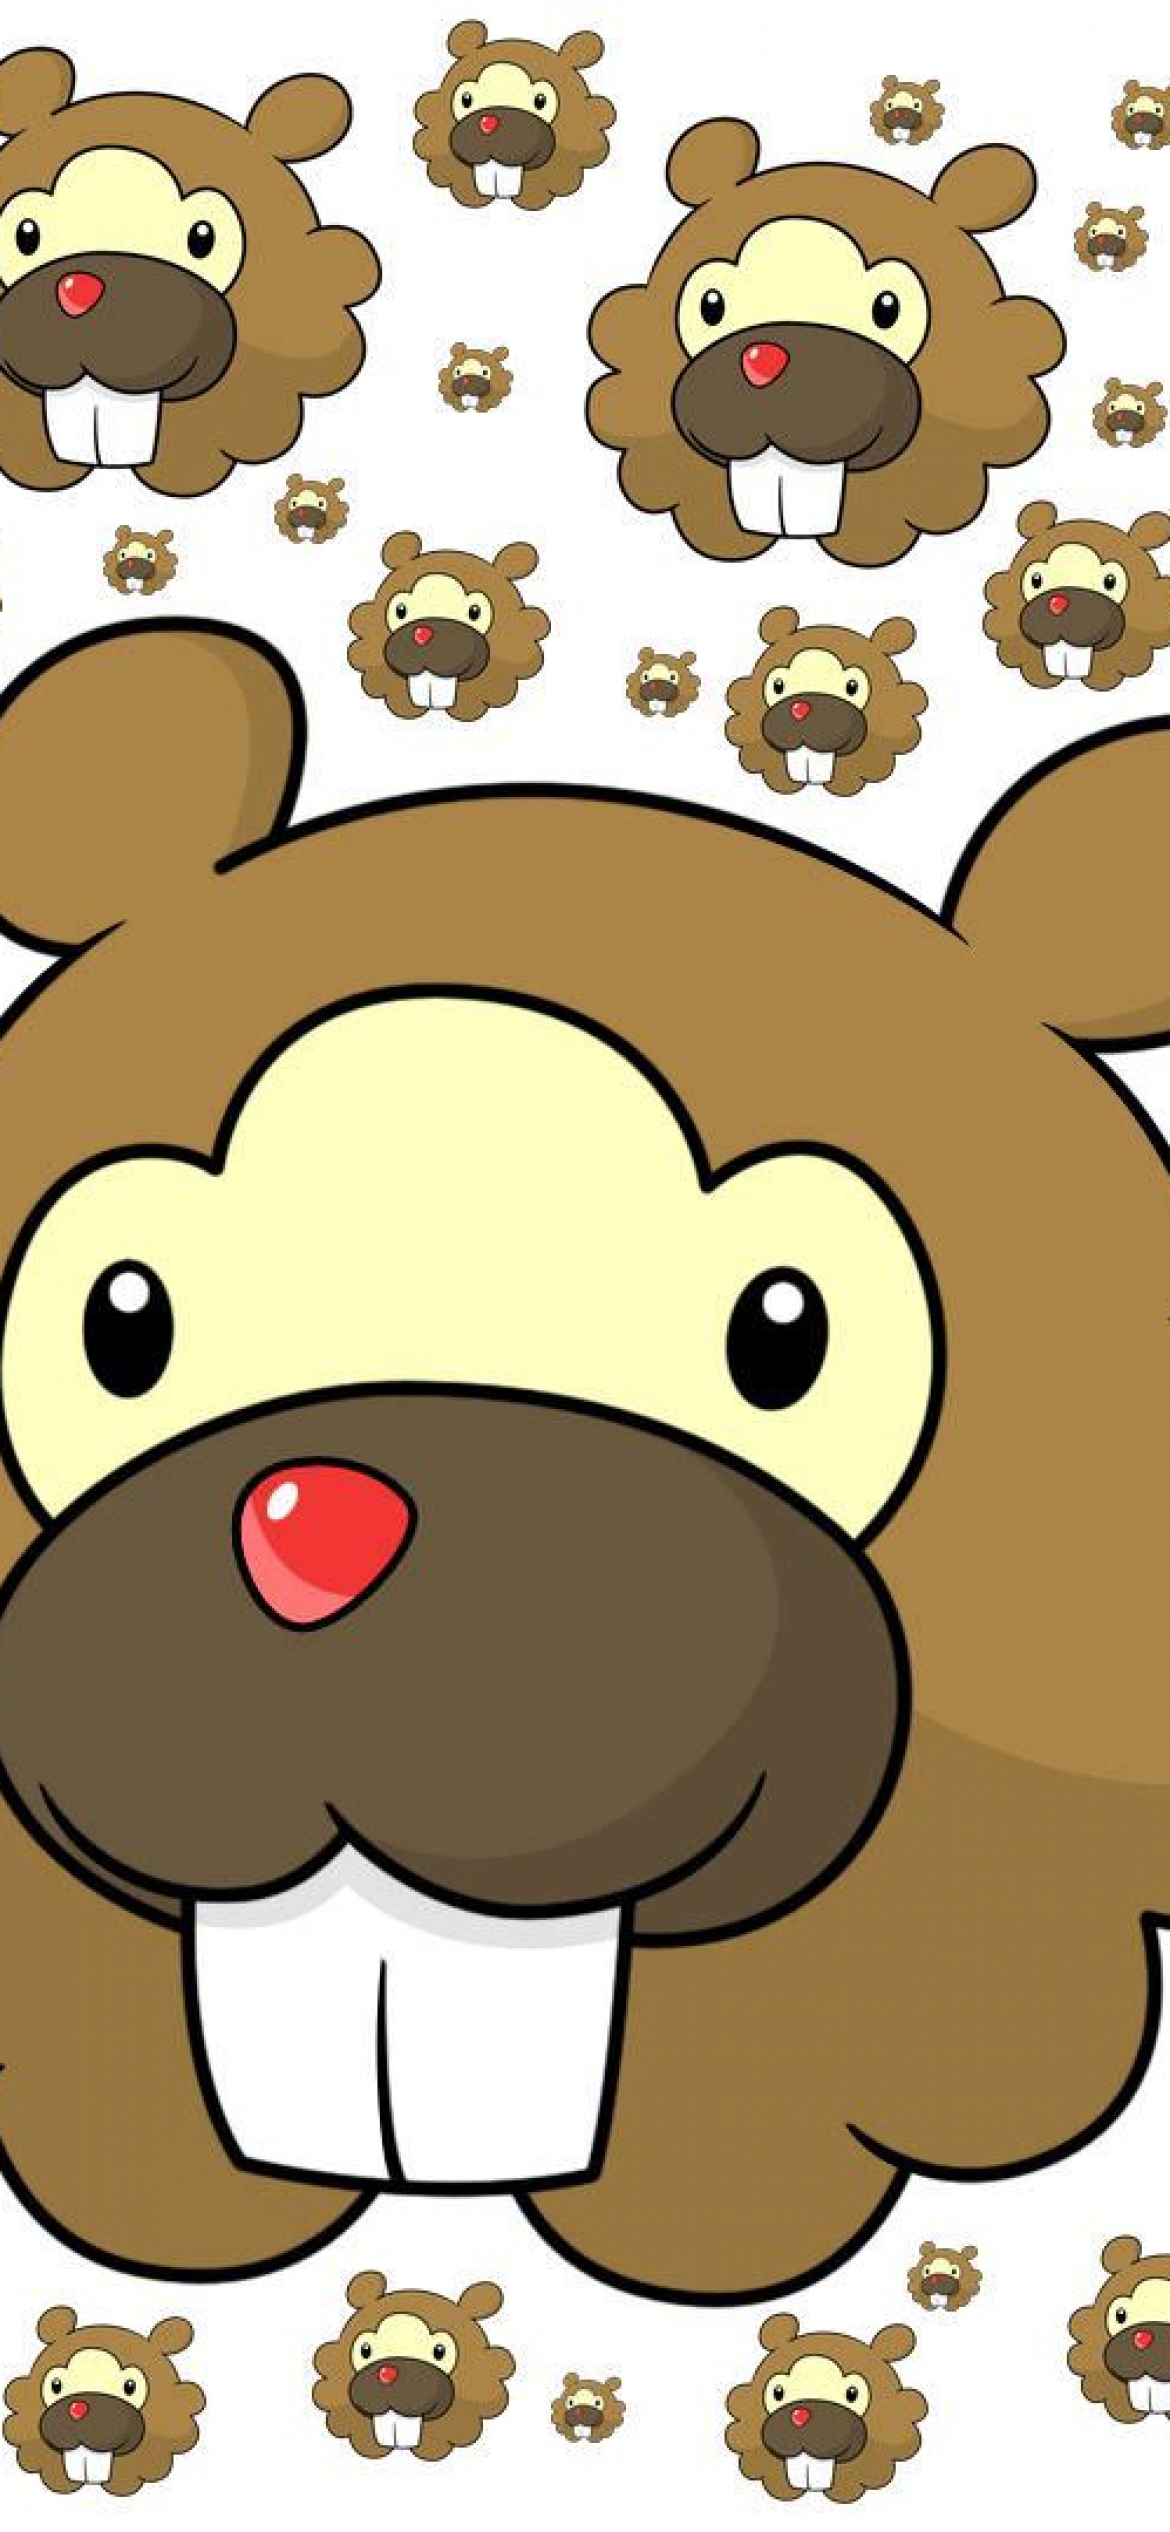 Pokémon on Twitter  BidoofDay announcement   httpstcoI9O0oJUwre  Twitter